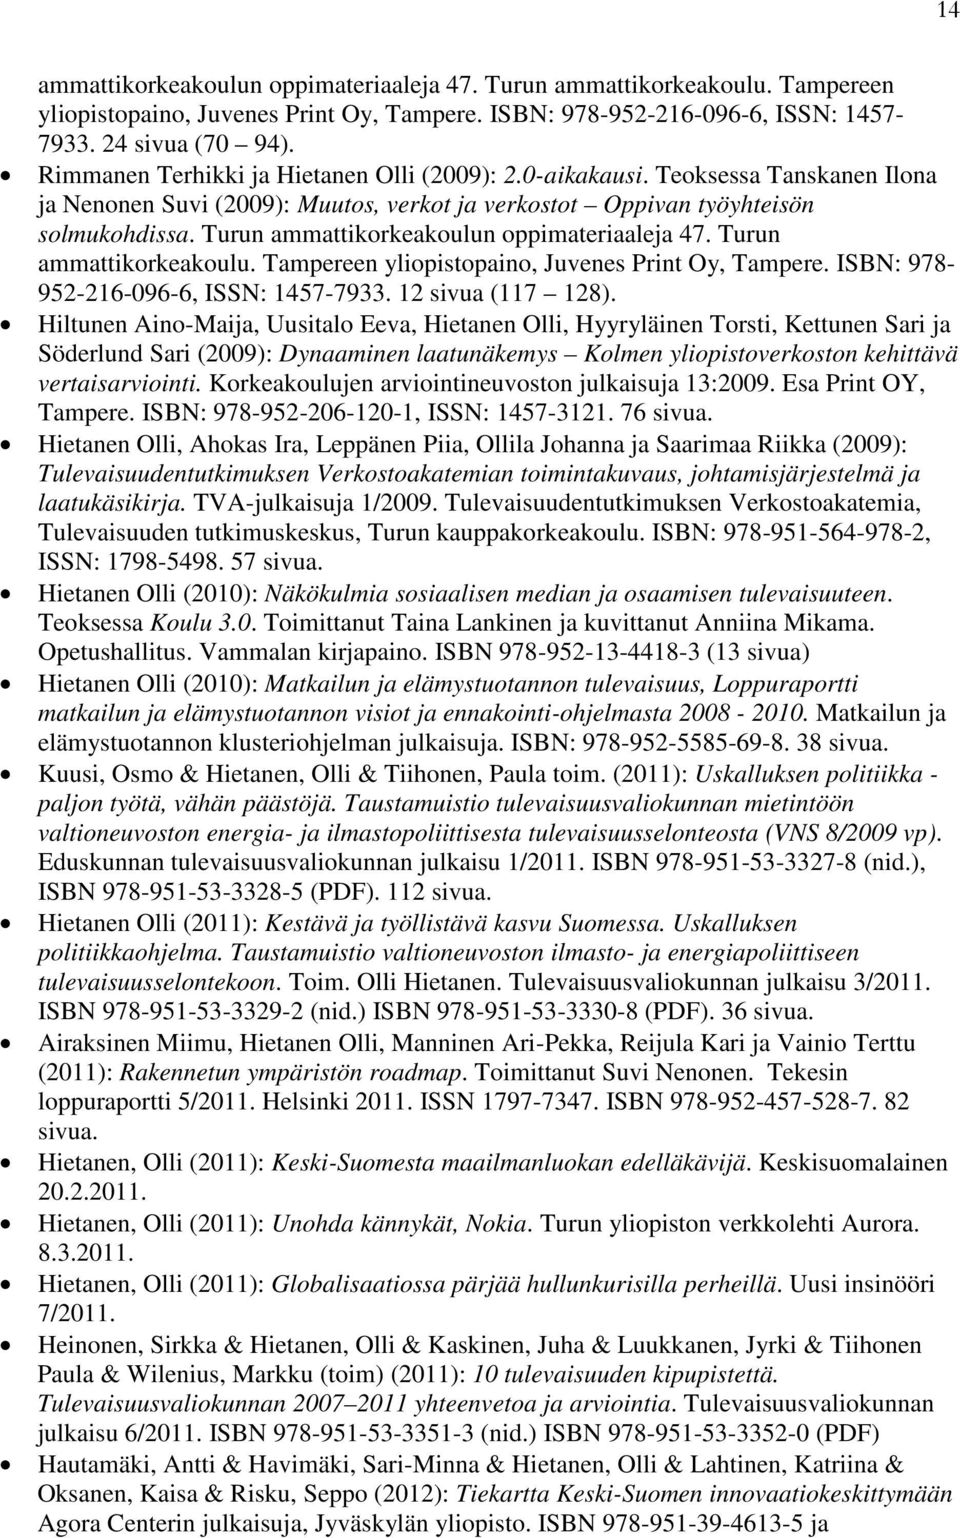 Turun ammattikorkeakoulun oppimateriaaleja 47. Turun ammattikorkeakoulu. Tampereen yliopistopaino, Juvenes Print Oy, Tampere. ISBN: 978-952-216-096-6, ISSN: 1457-7933. 12 sivua (117 128).